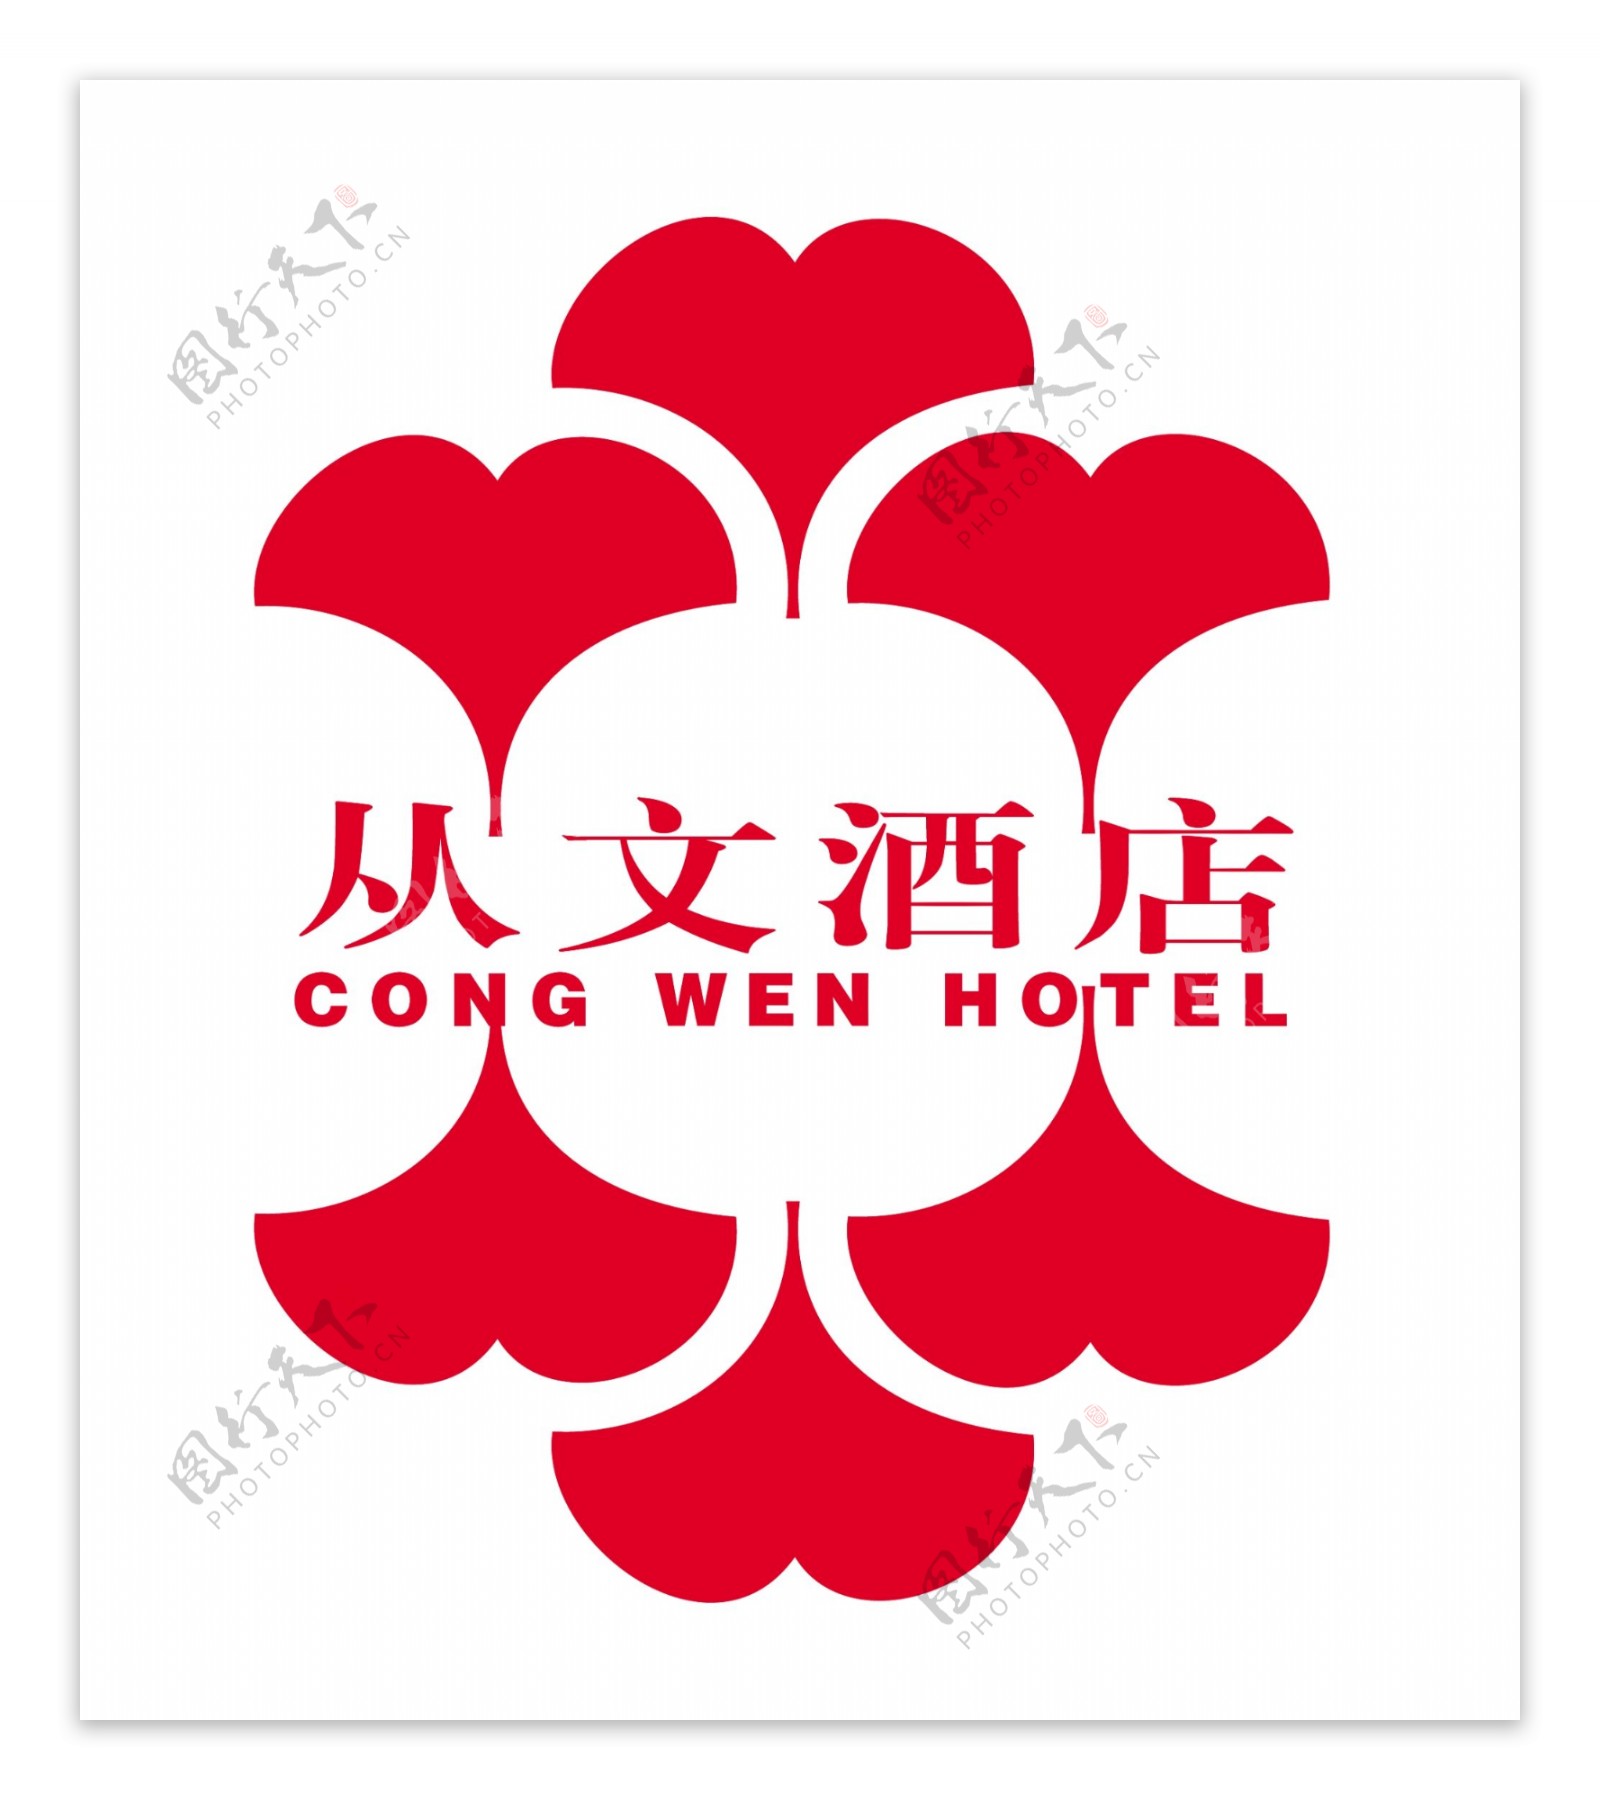 从文酒店logo